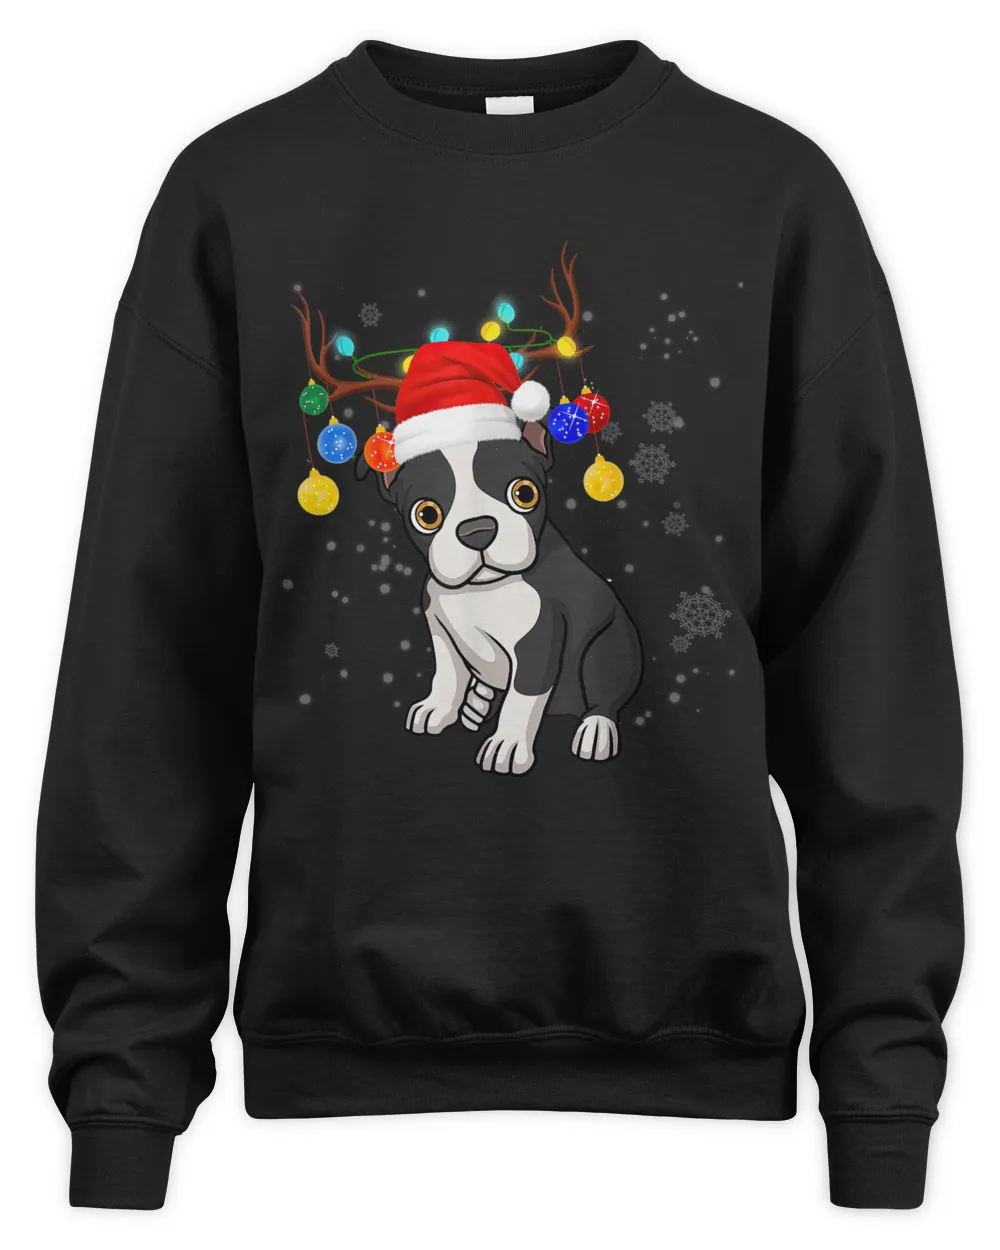 Cute Boston Terrier Reindeer Light Christmas Unisex T-Shirt, Christmas Gift for Boston Terrier Owners